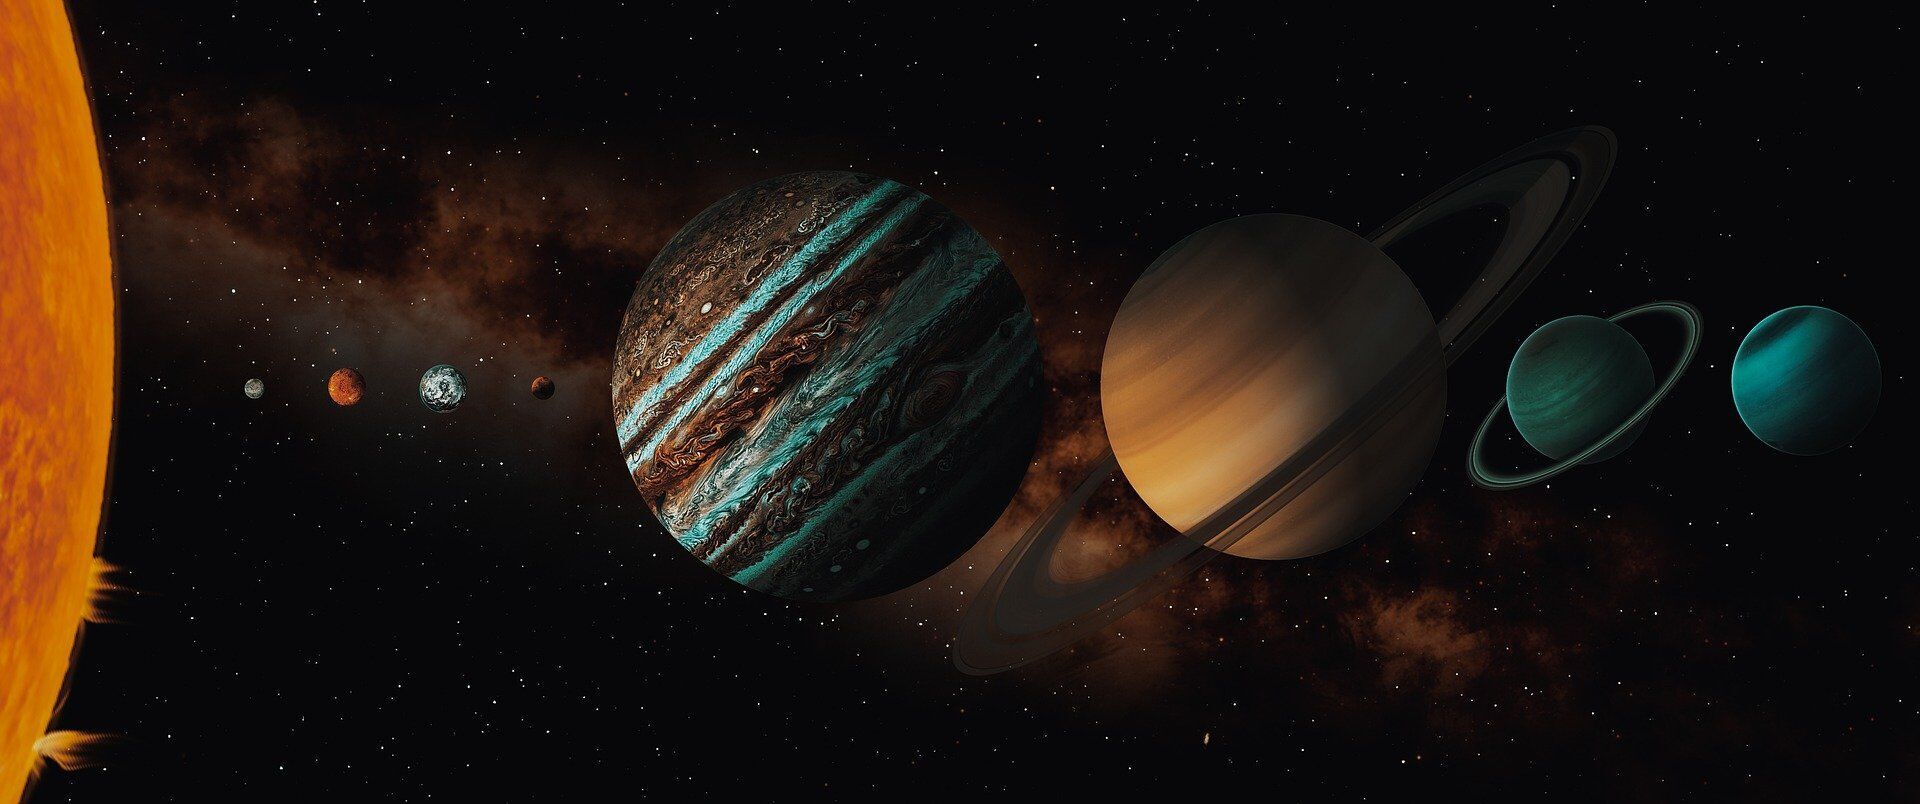 Парад планет можно наблюдать с 25 декабря по 7 января